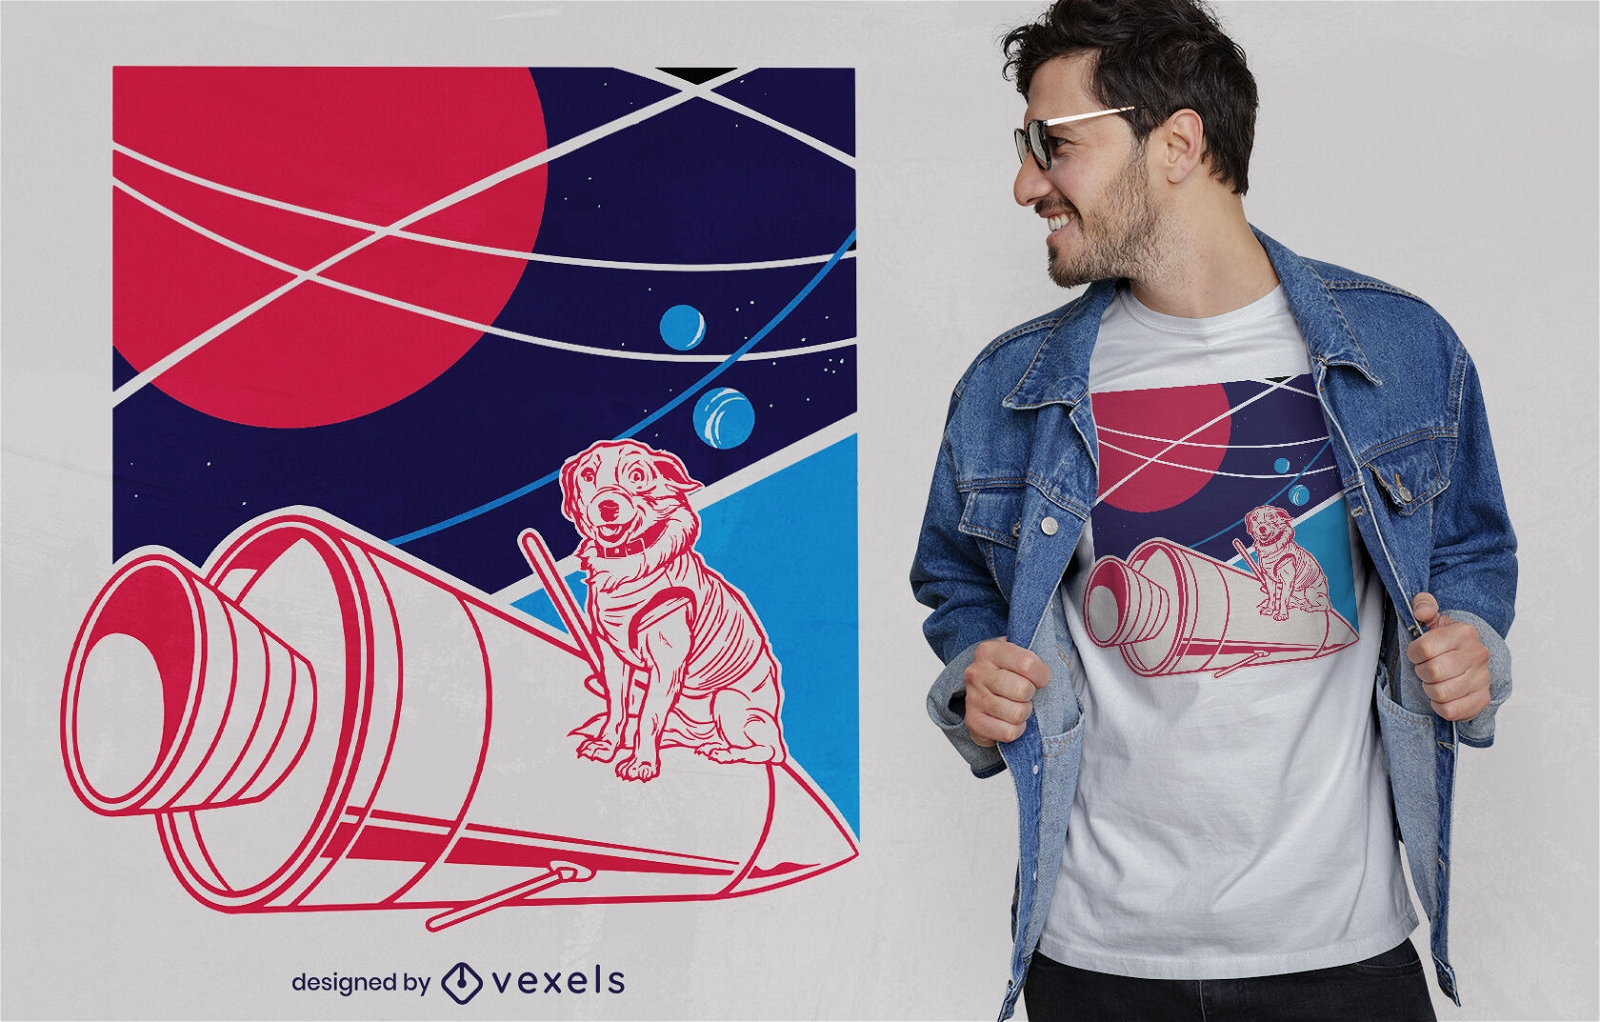 Cão no design de t-shirt de foguete espacial